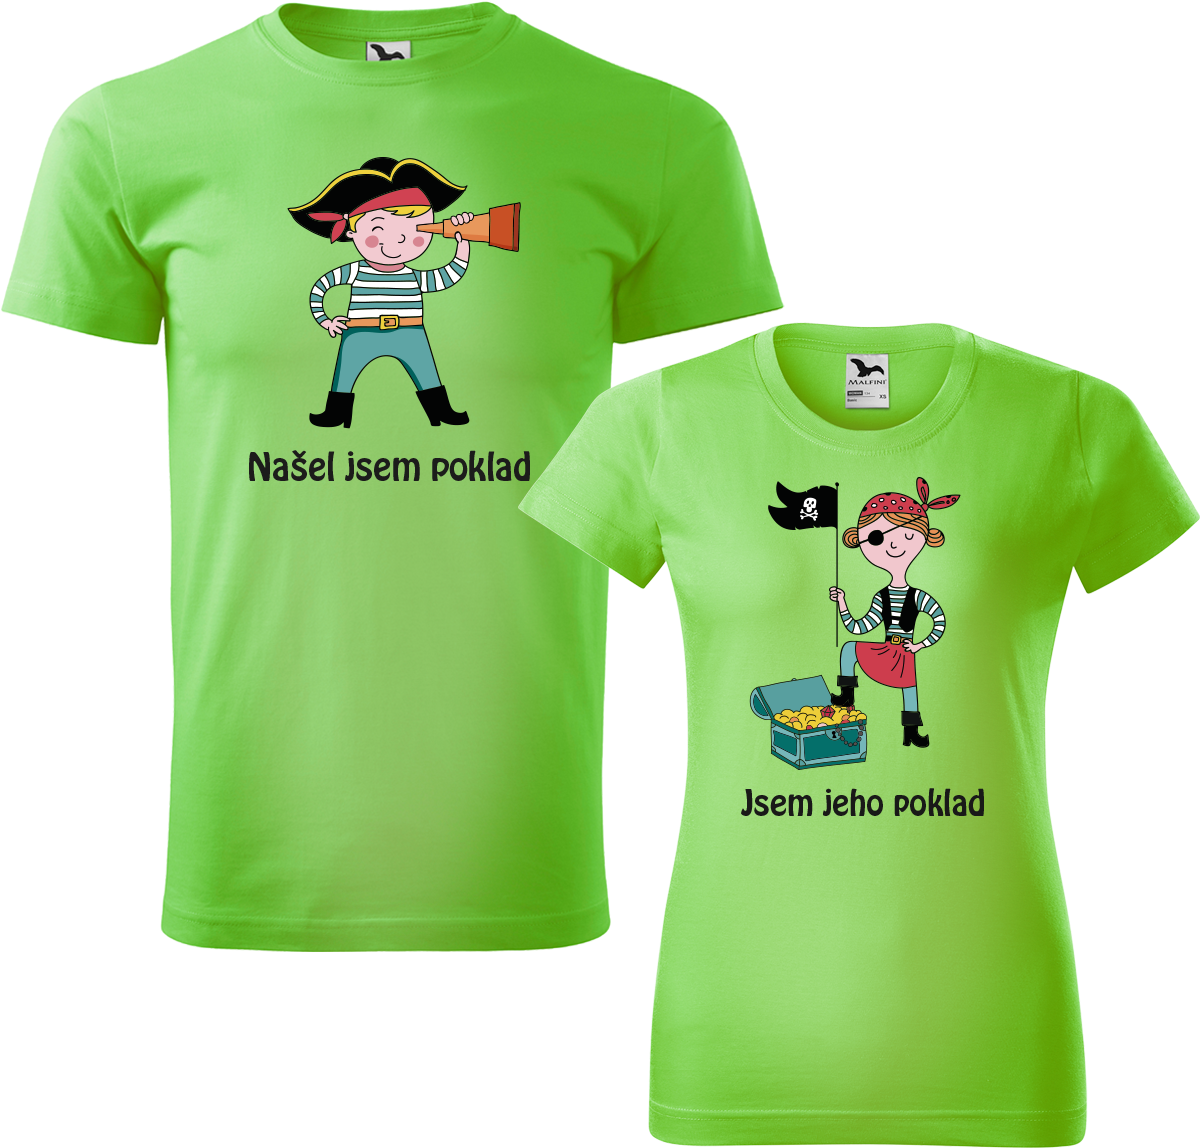 Trička pro páry - Poklad Barva: Apple Green (92), Velikost dámské tričko: L, Velikost pánské tričko: L